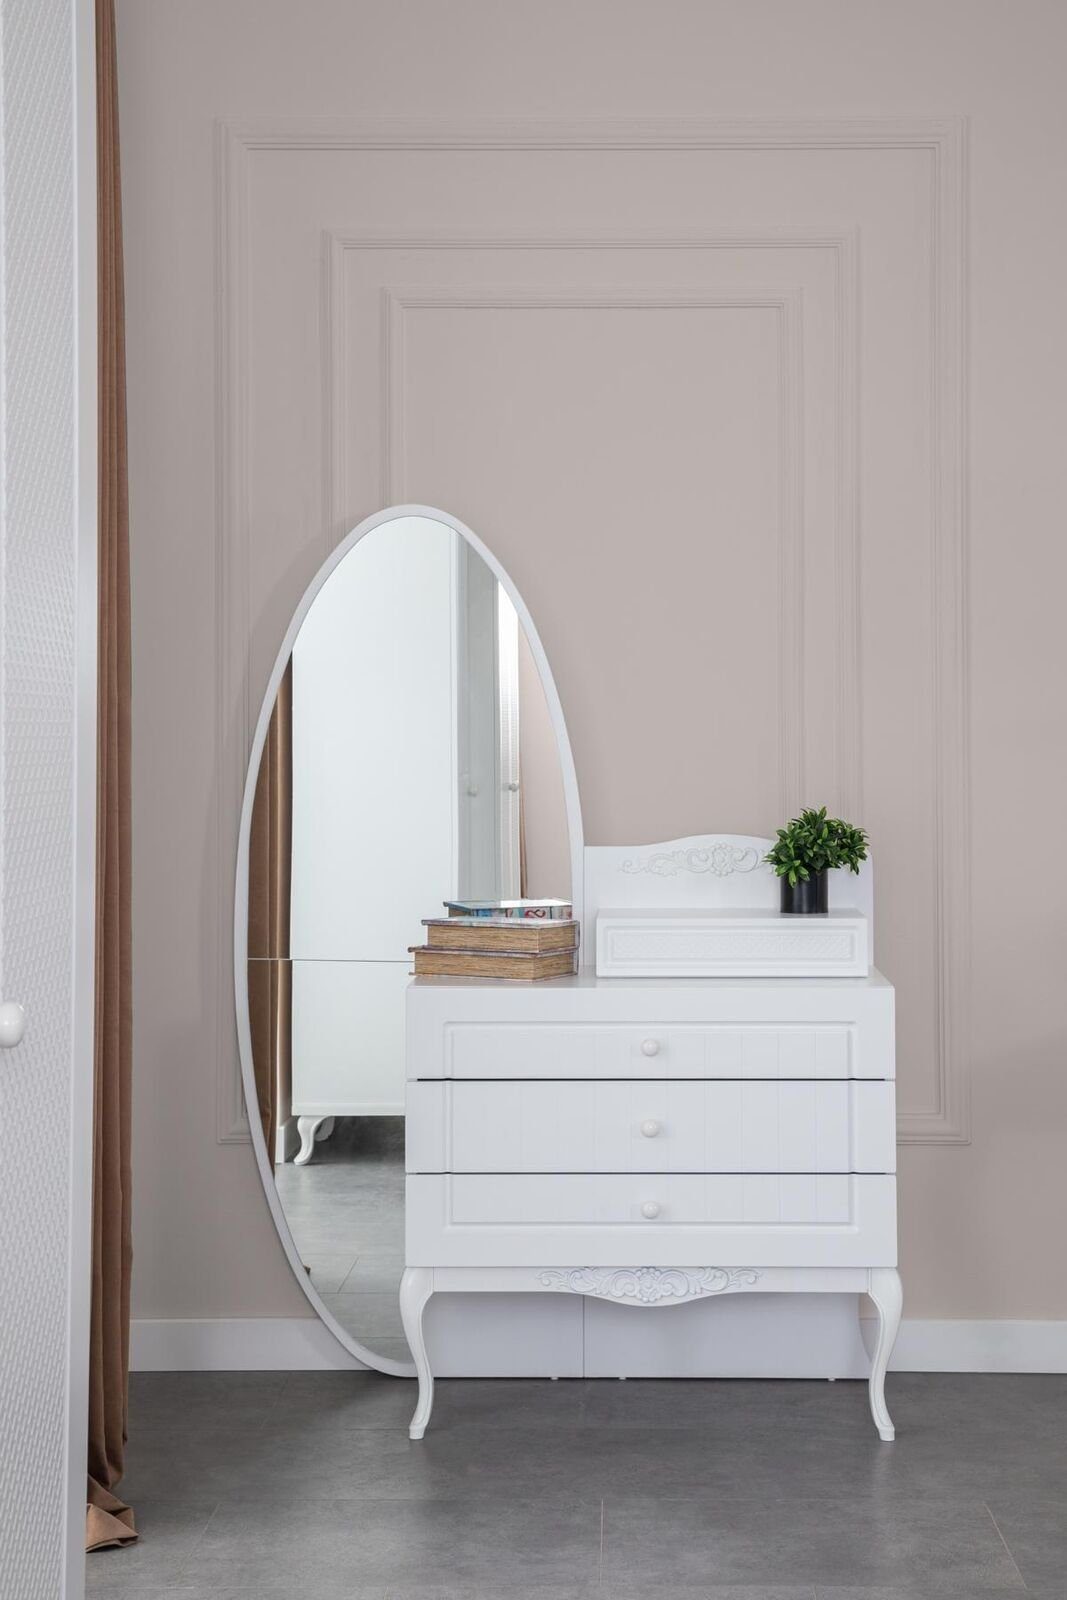 JVmoebel Kommode Kommode mit Spiegel Jugendzimmer Möbel Design Neu Holz Weiße Farbe